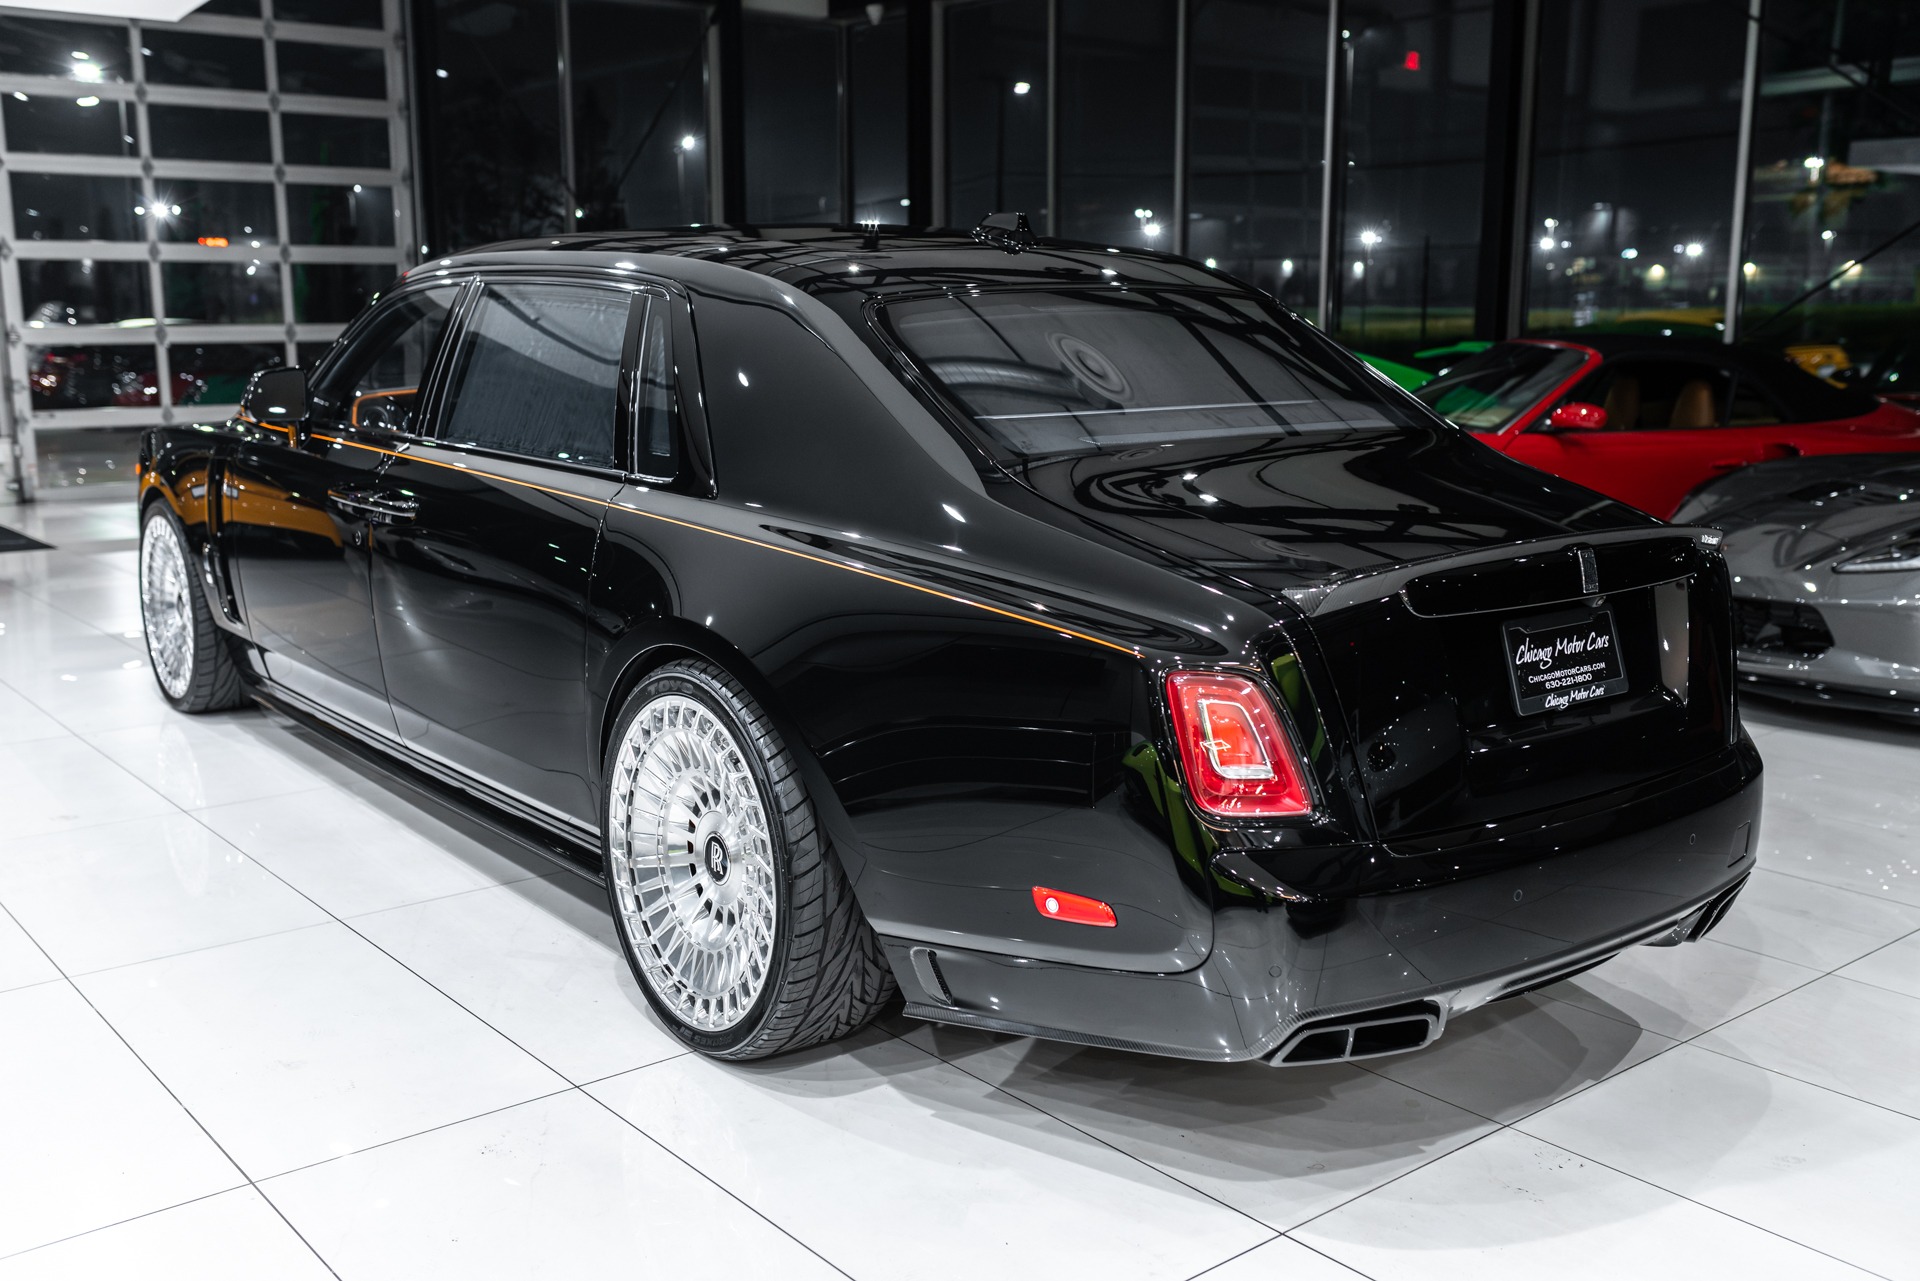 How Much is a 2023 Rolls-Royce Phantom?